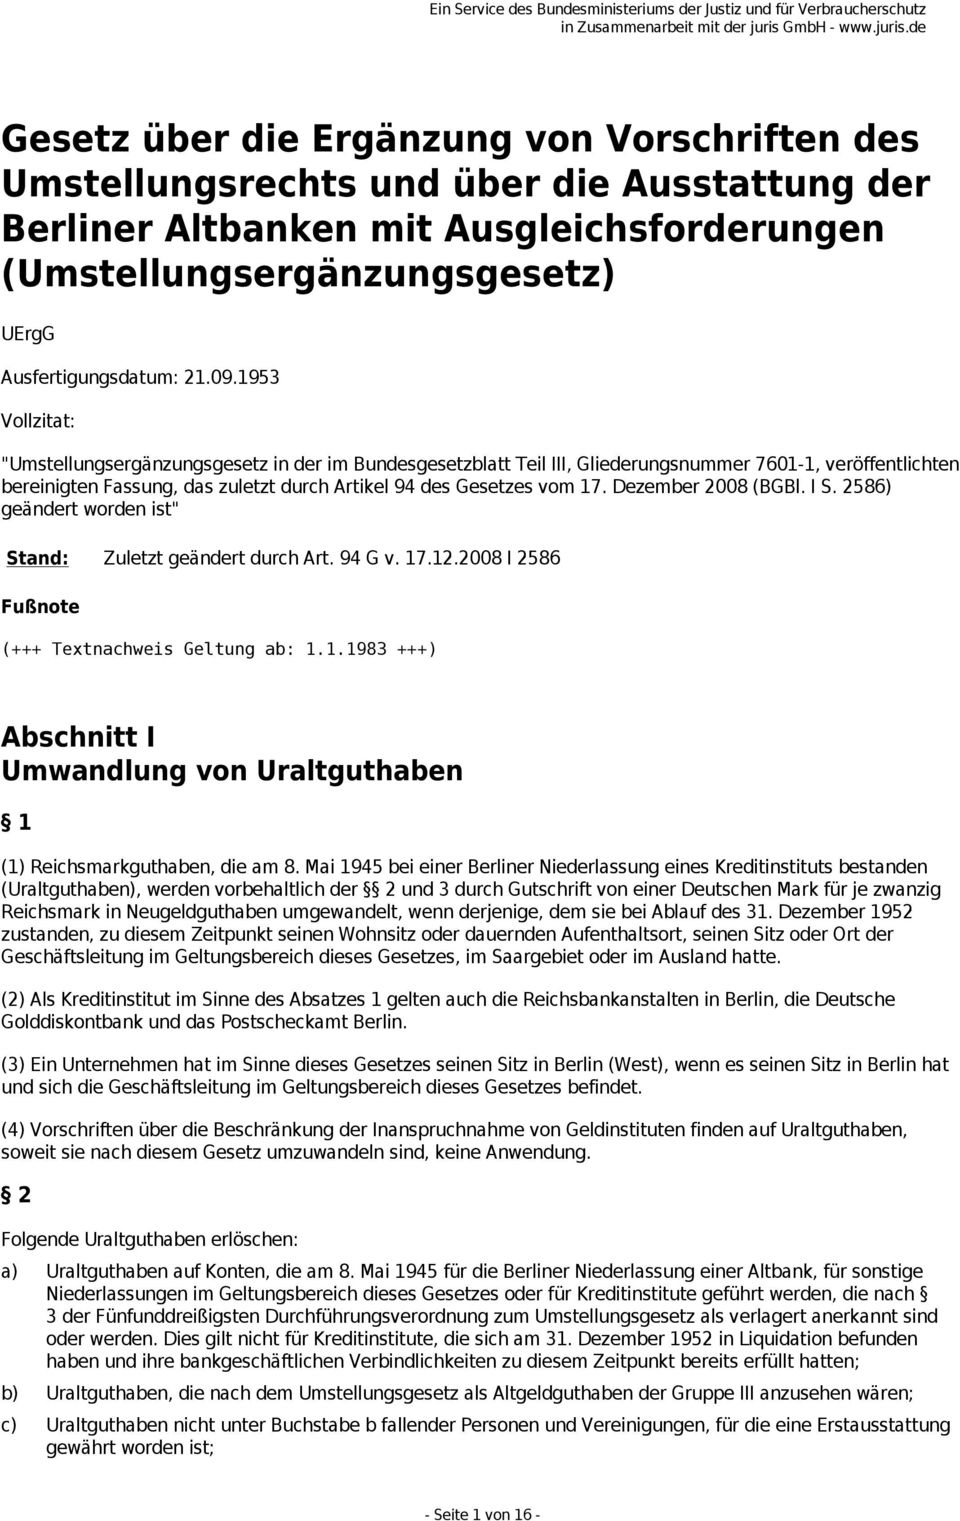 Dezember 2008 (BGBl. I S. 2586) geändert worden ist" Stand: Zuletzt geändert durch Art. 94 G v. 17.12.2008 I 2586 (+++ Textnachweis Geltung ab: 1.1.1983 +++) Abschnitt I Umwandlung von Uraltguthaben 1 (1) Reichsmarkguthaben, die am 8.